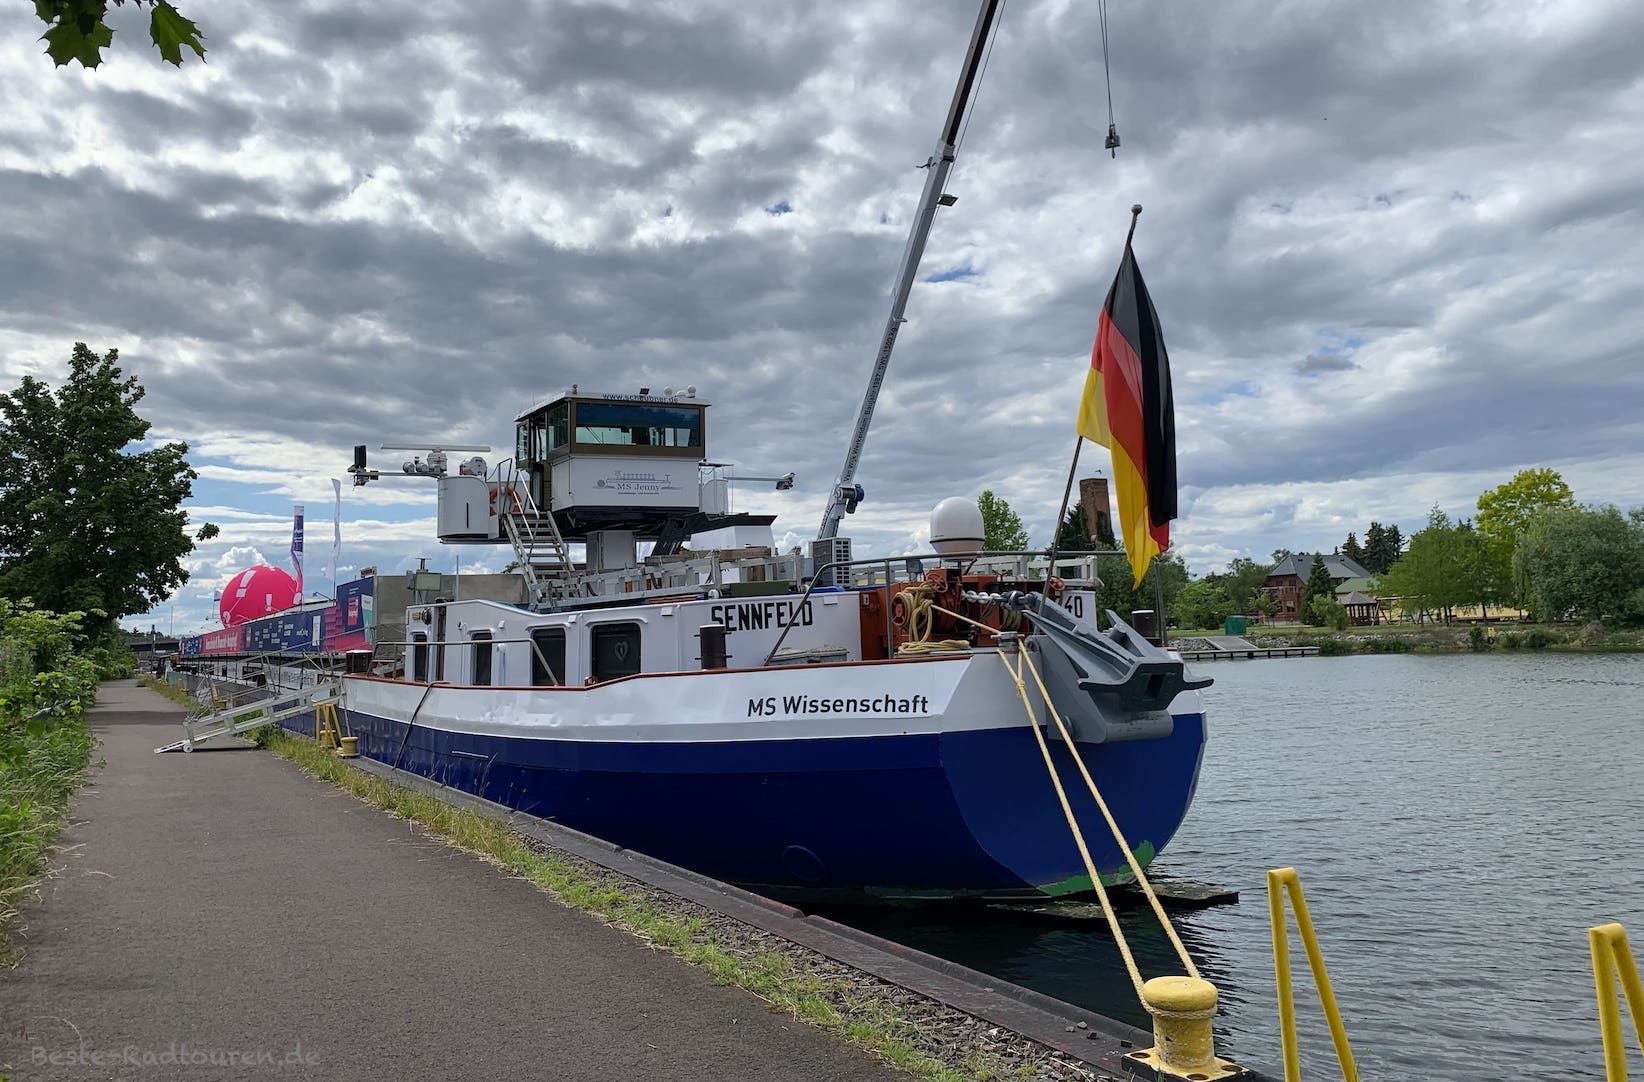 Schiff am Elbe-Havel-Kanal in Genthin: MS Wissenschaft